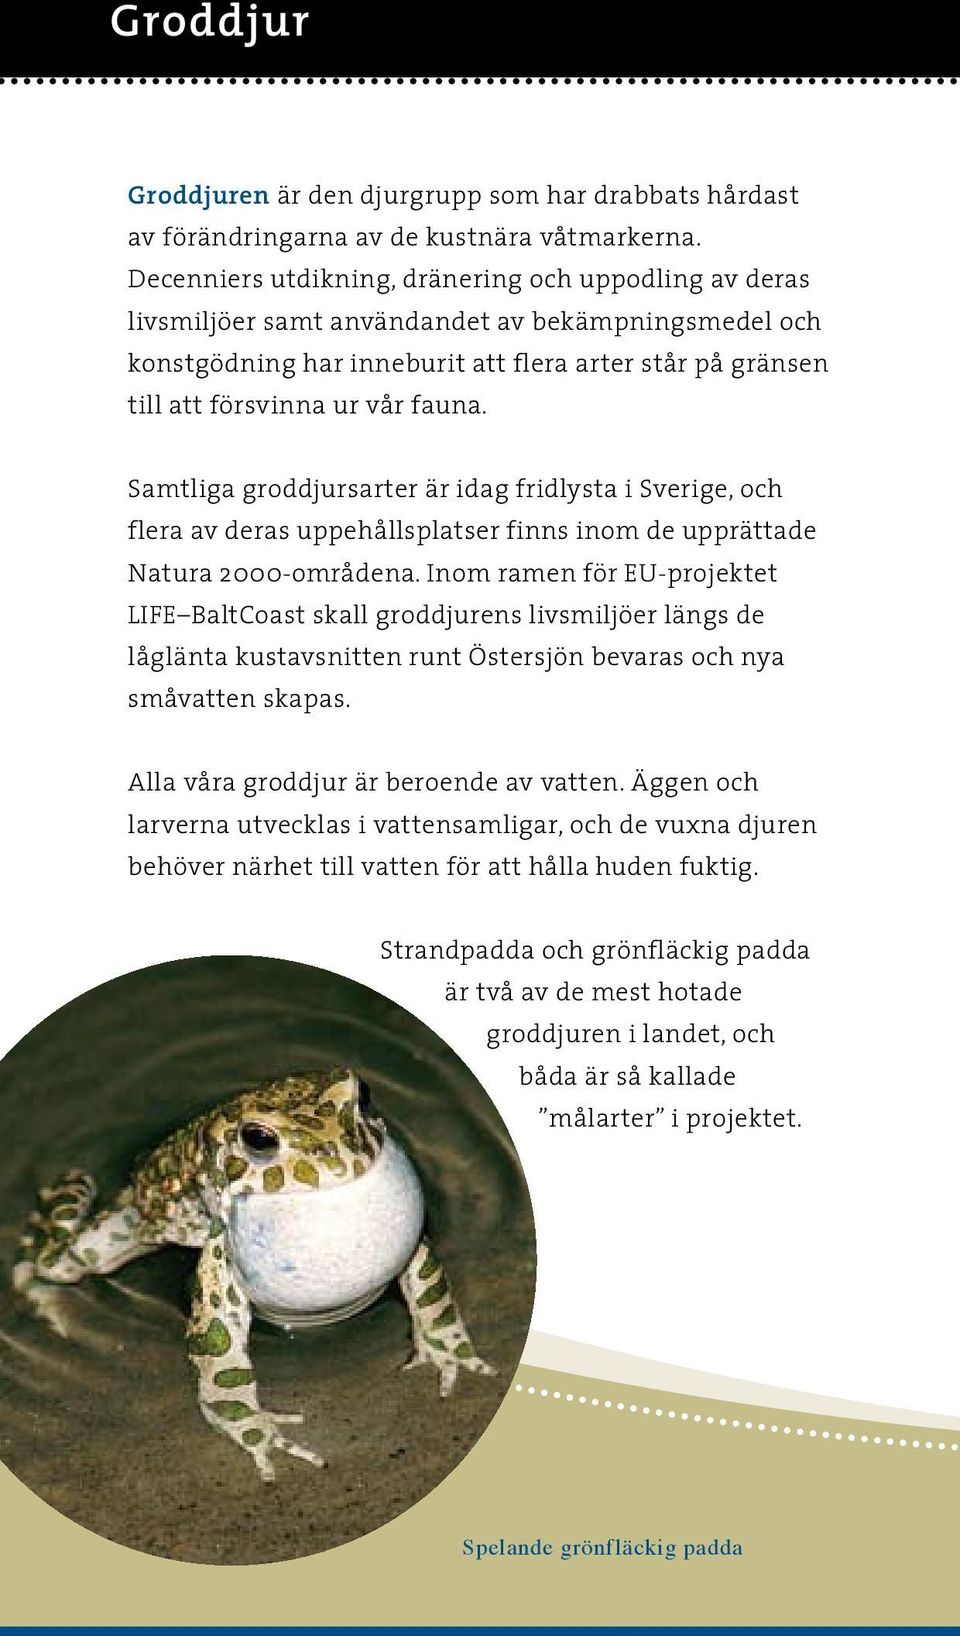 Samtliga groddjursarter är idag fridlysta i Sverige, och flera av deras uppehållsplatser finns inom de upprättade Natura 2000-områdena.